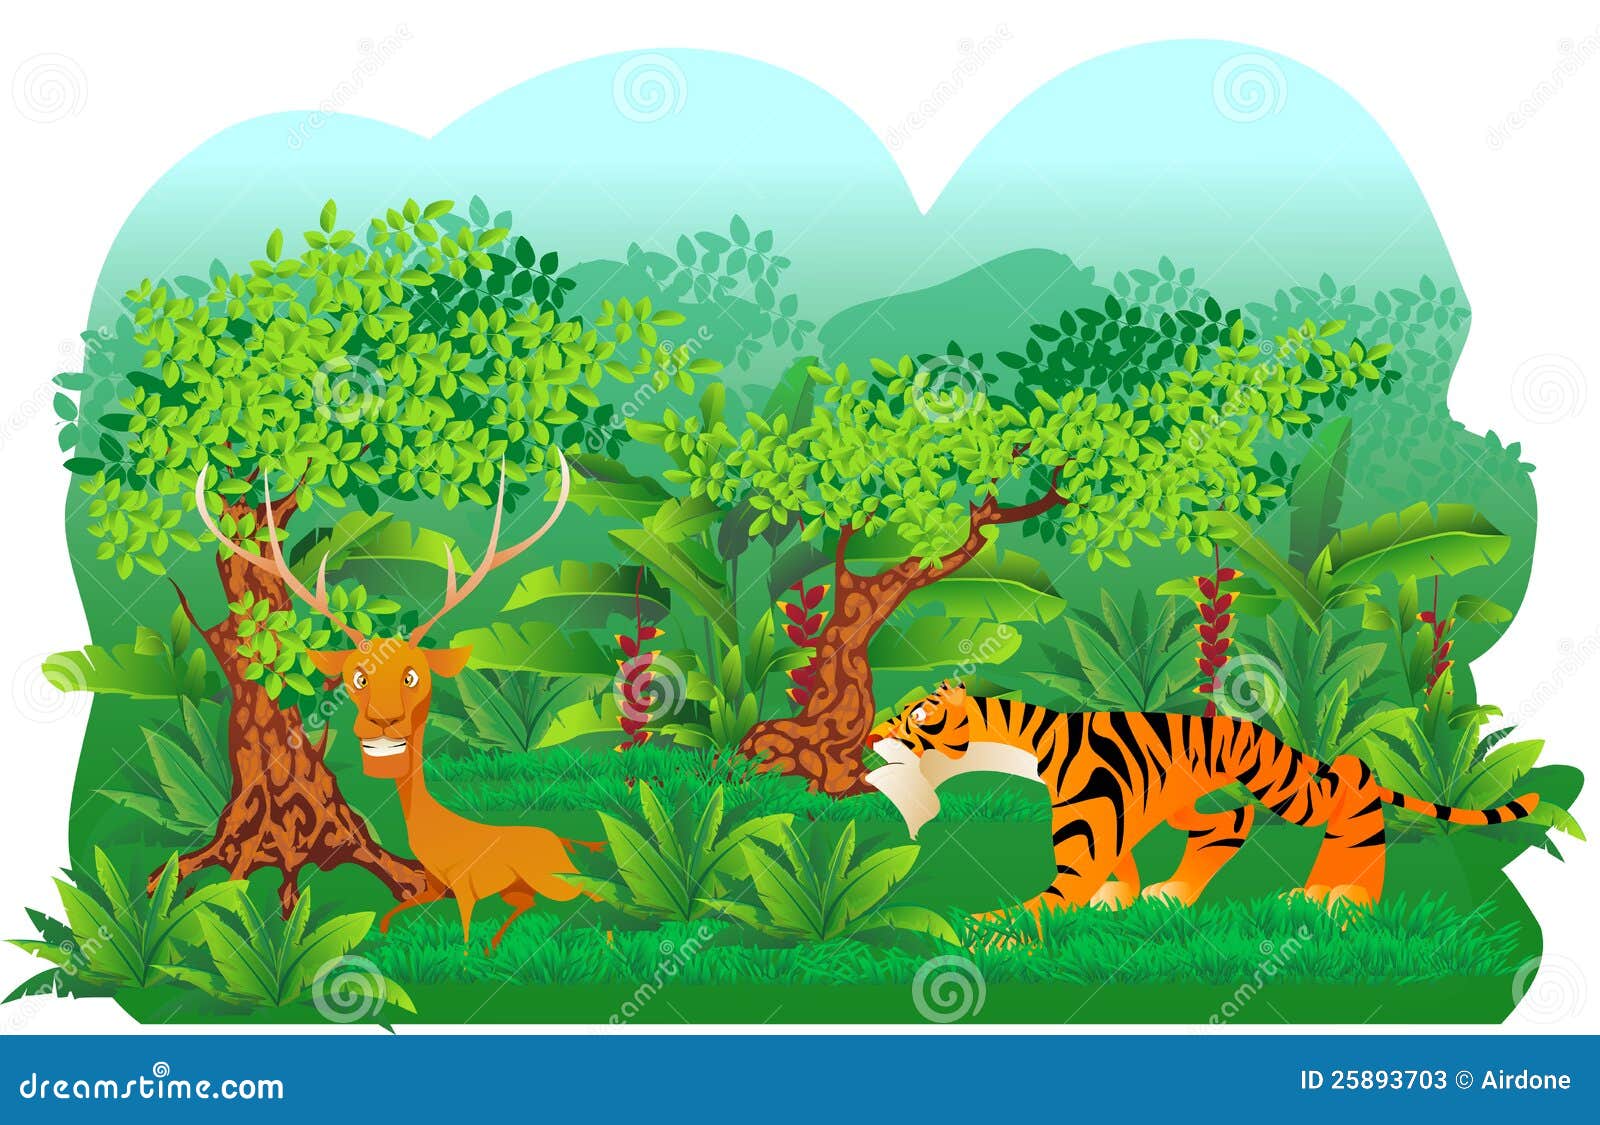 Tiger hunt a deer stock illustration. Illustration of panther - 25893703